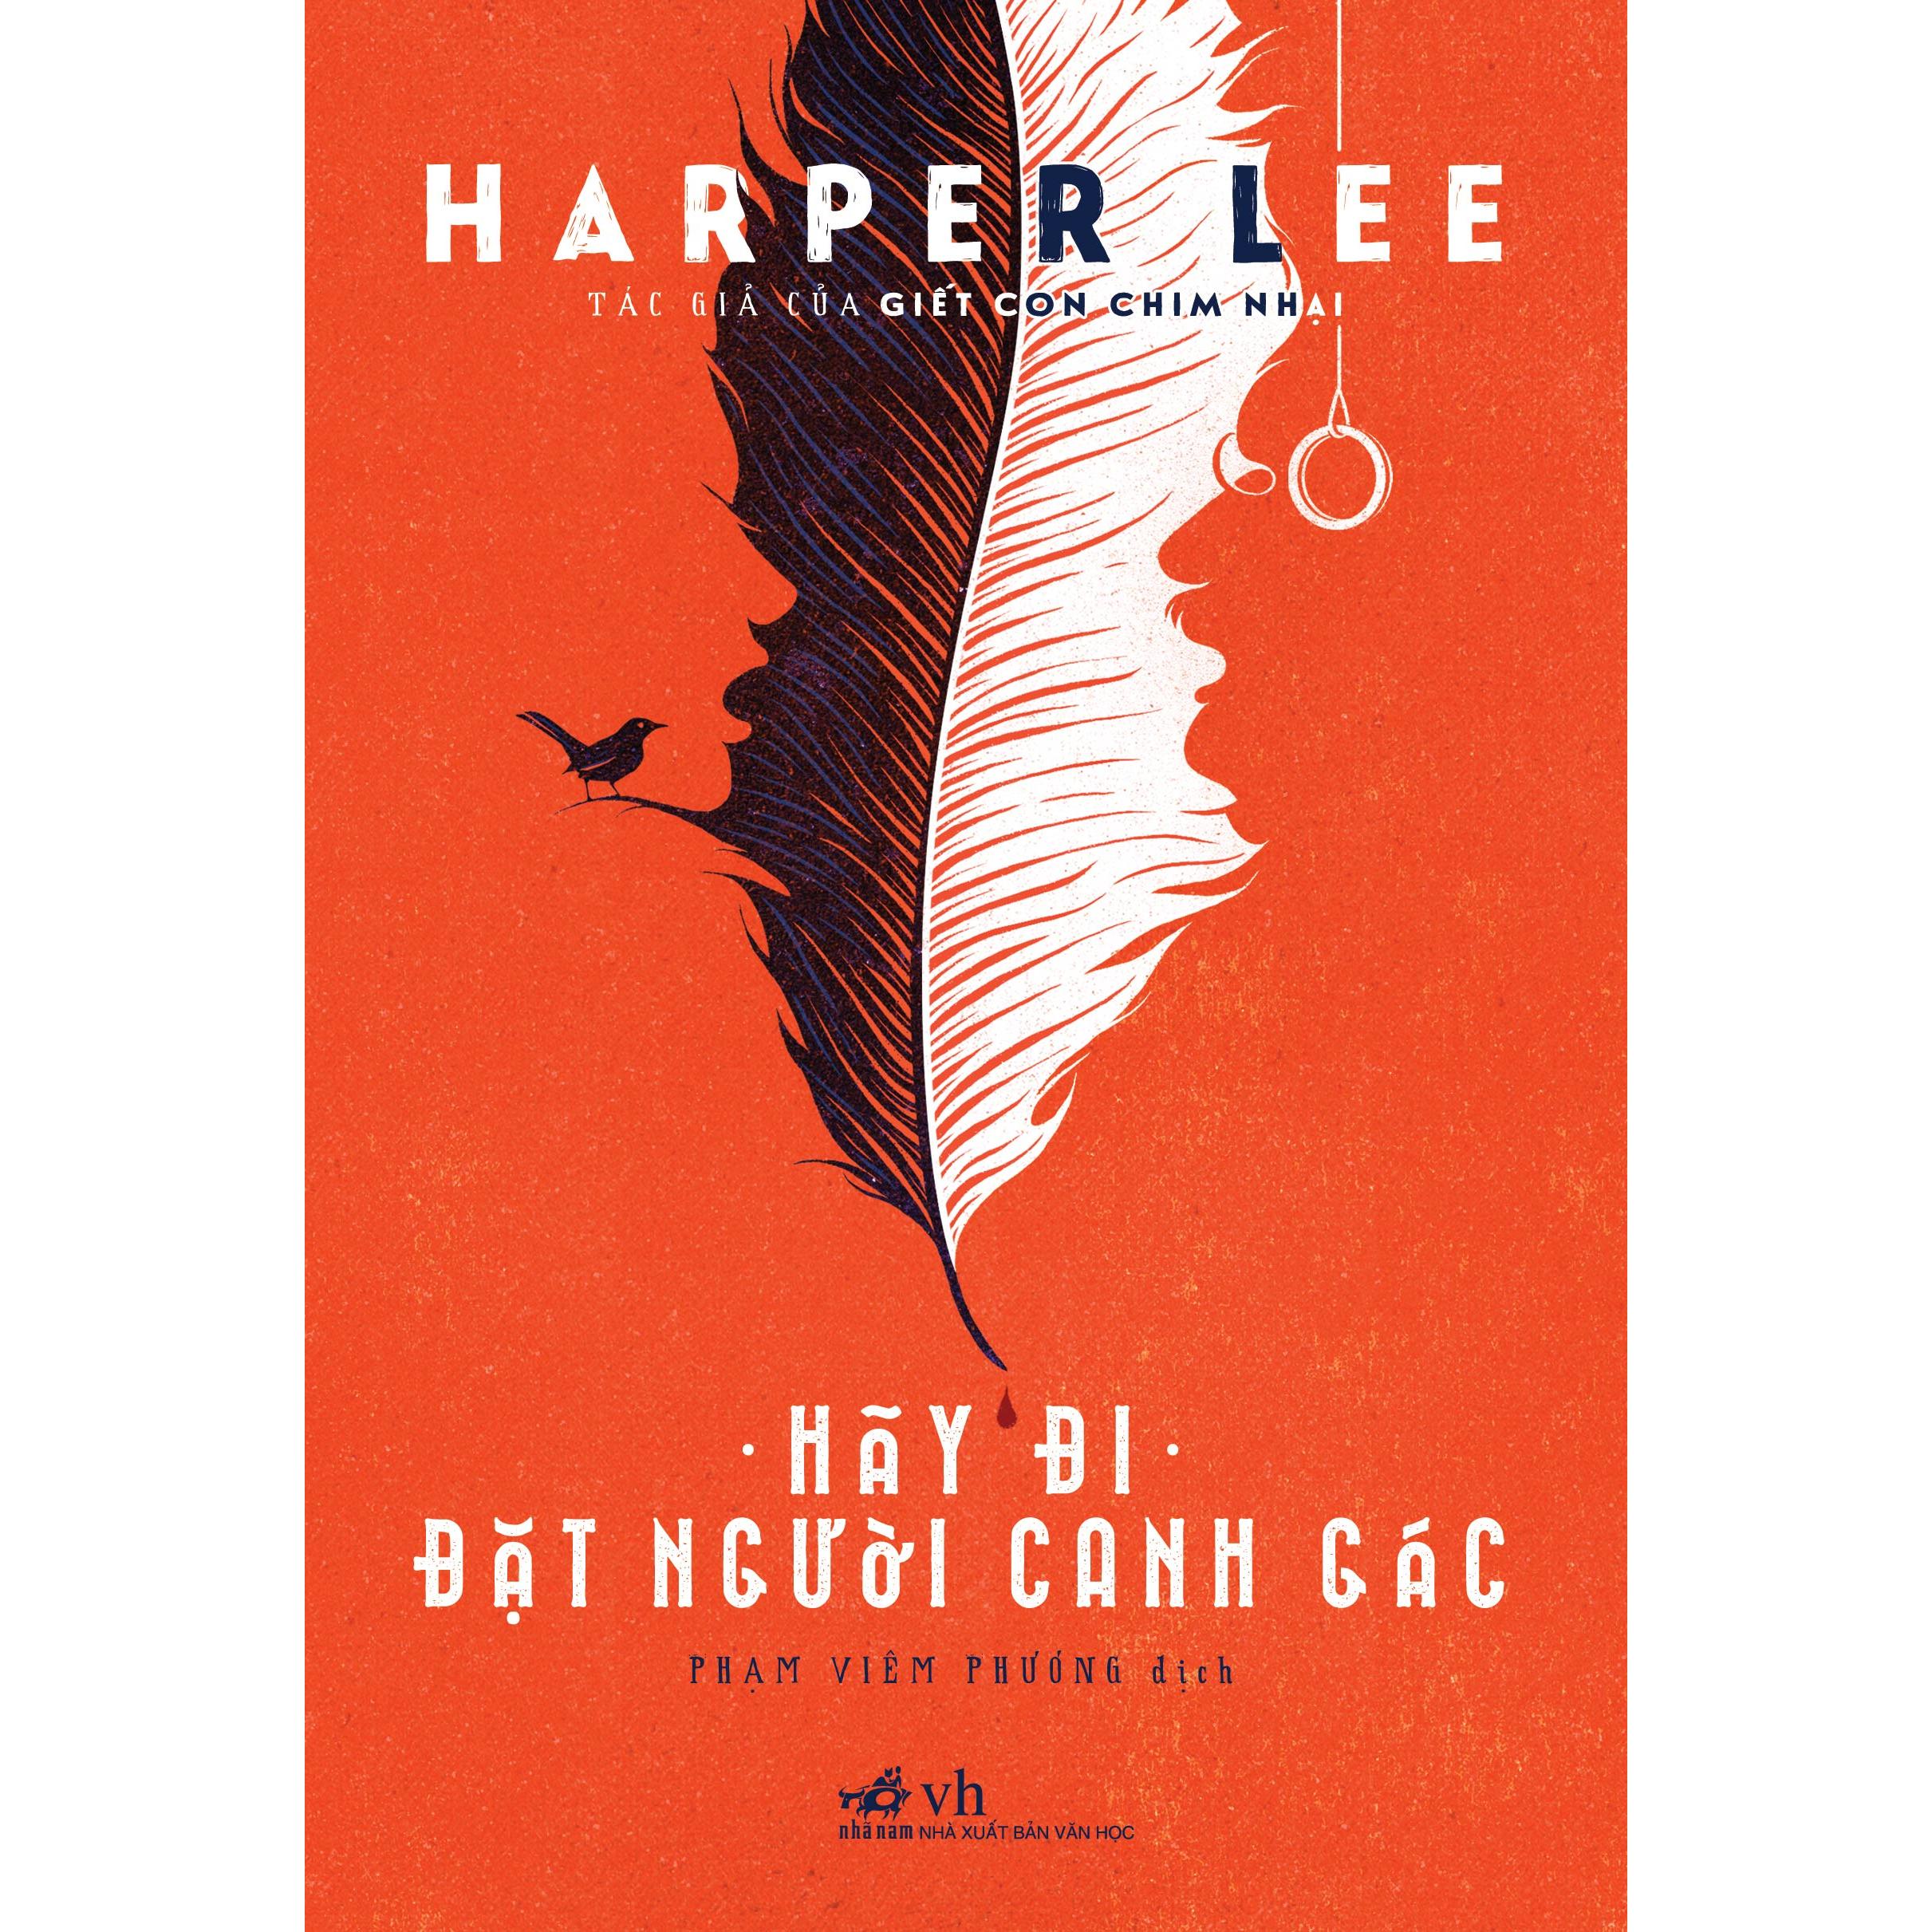 Combo Giết con chim nhại - Hãy đi đặt người canh gác (Harper Lee)